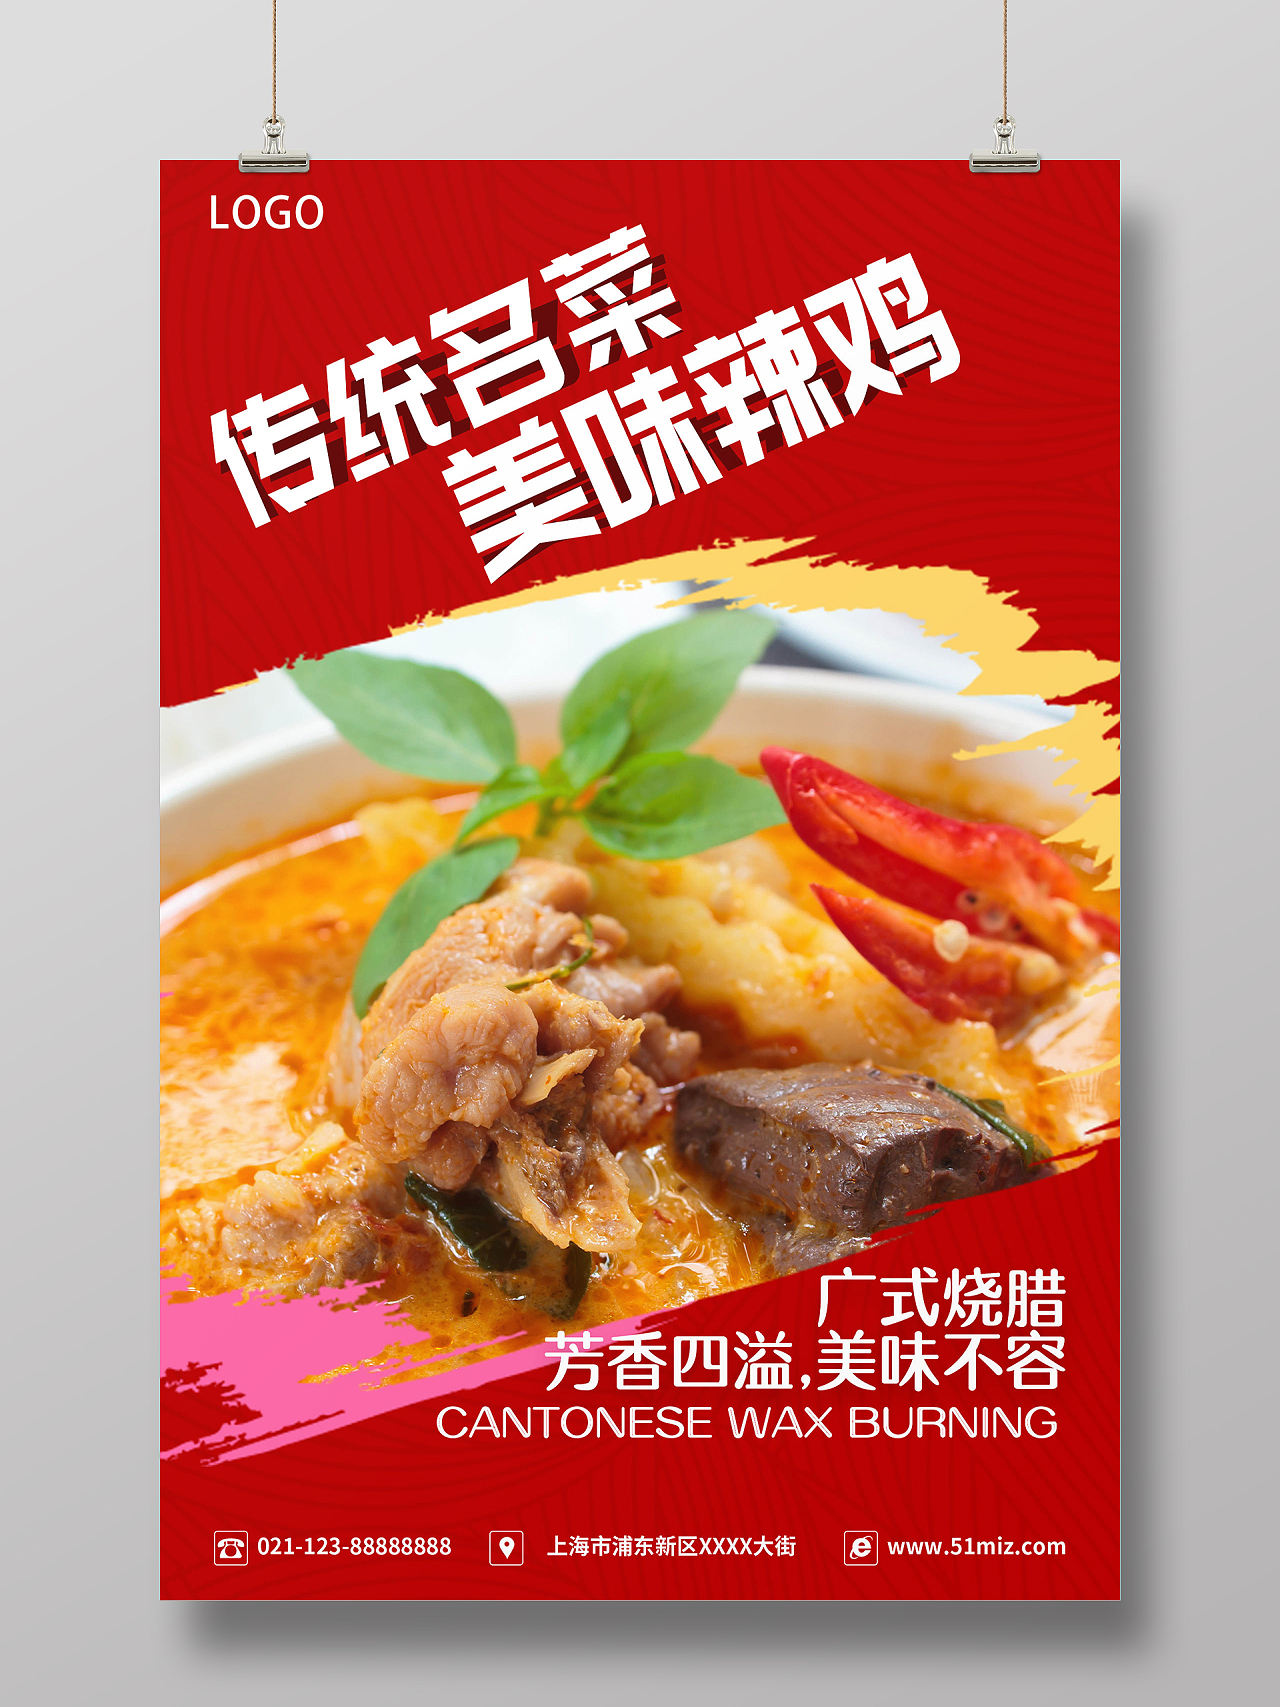 简约大气红色传统名菜美味辣鸡传统名菜烧腊美味海报